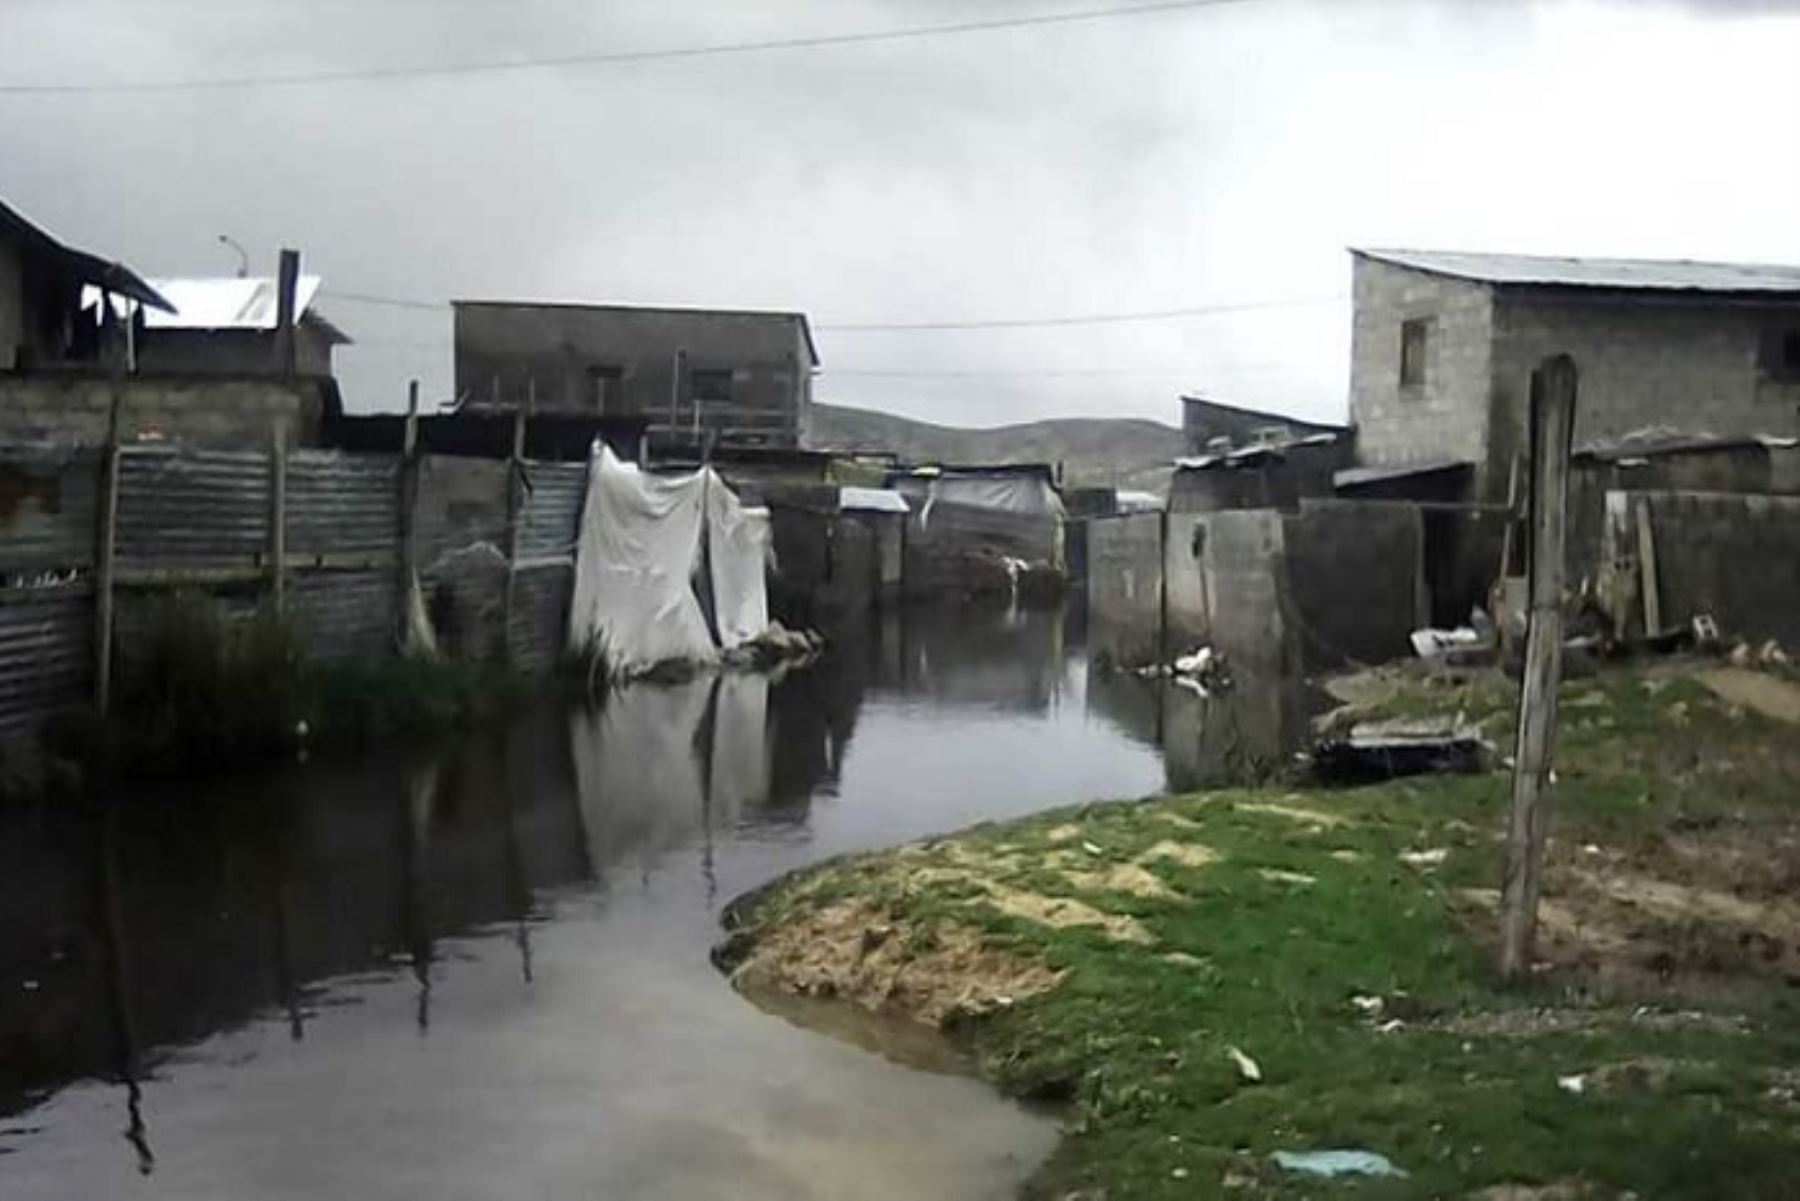 El desborde del río San Juan, en el distrito pasqueño de Simón Bolívar, debido al incremento de su cauce por el aporte de las lluvias, inundó más de 30 casas en las comunidades de San Antonio de Rancas y Yurajhuanca.